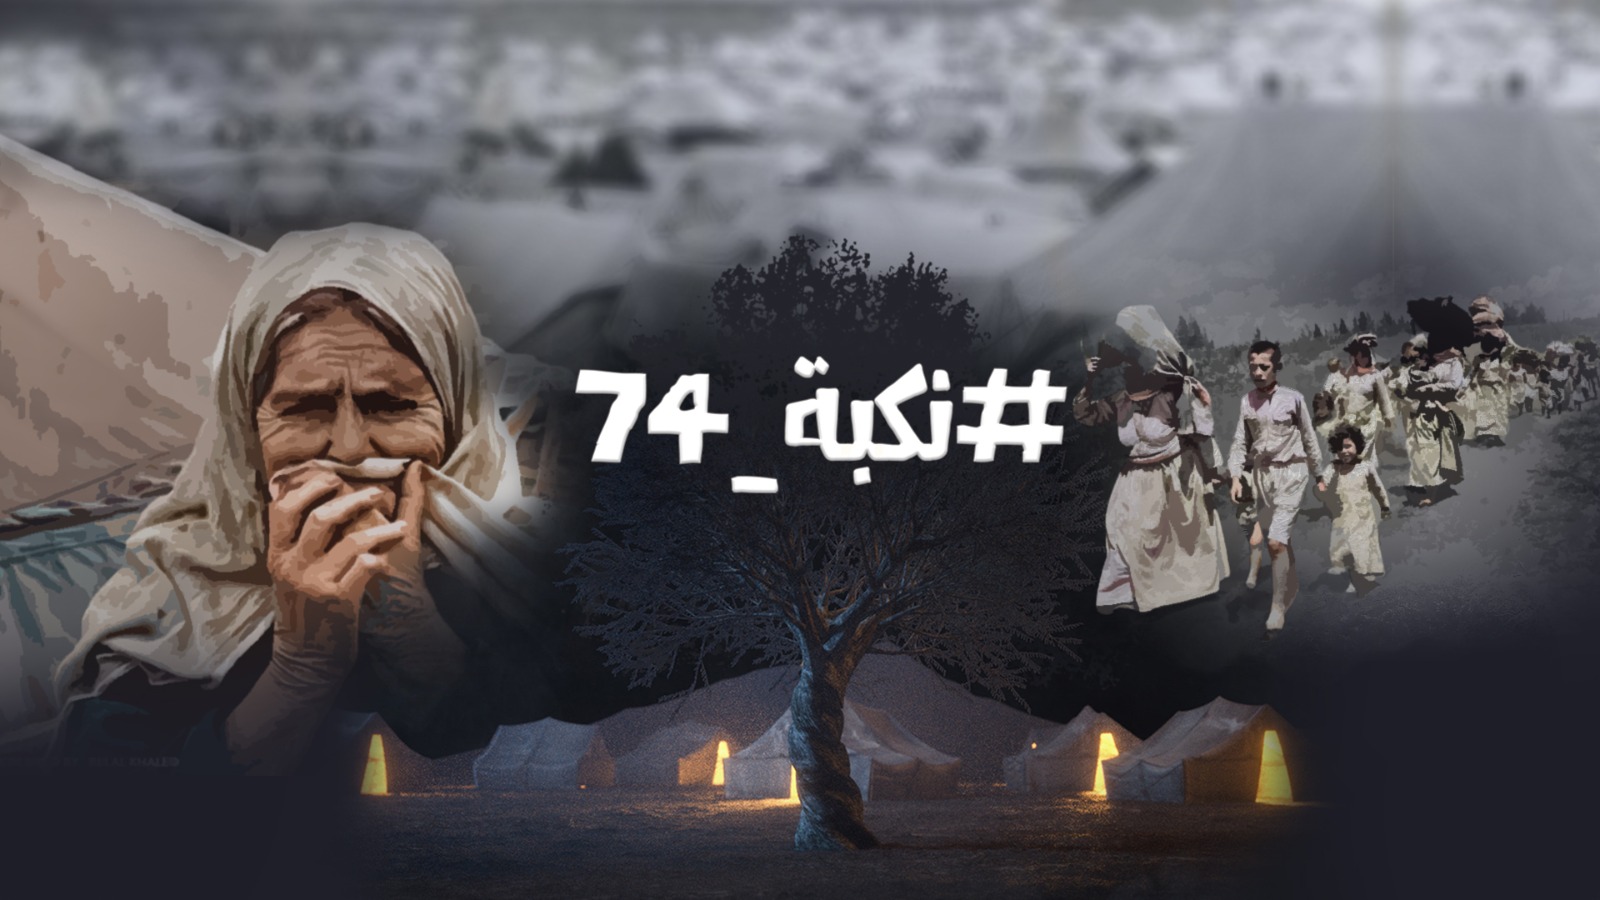 بمشاركة مؤسسات فلسطينية دولية، الاستعداد لإطلاق حملة "نكبة 74"